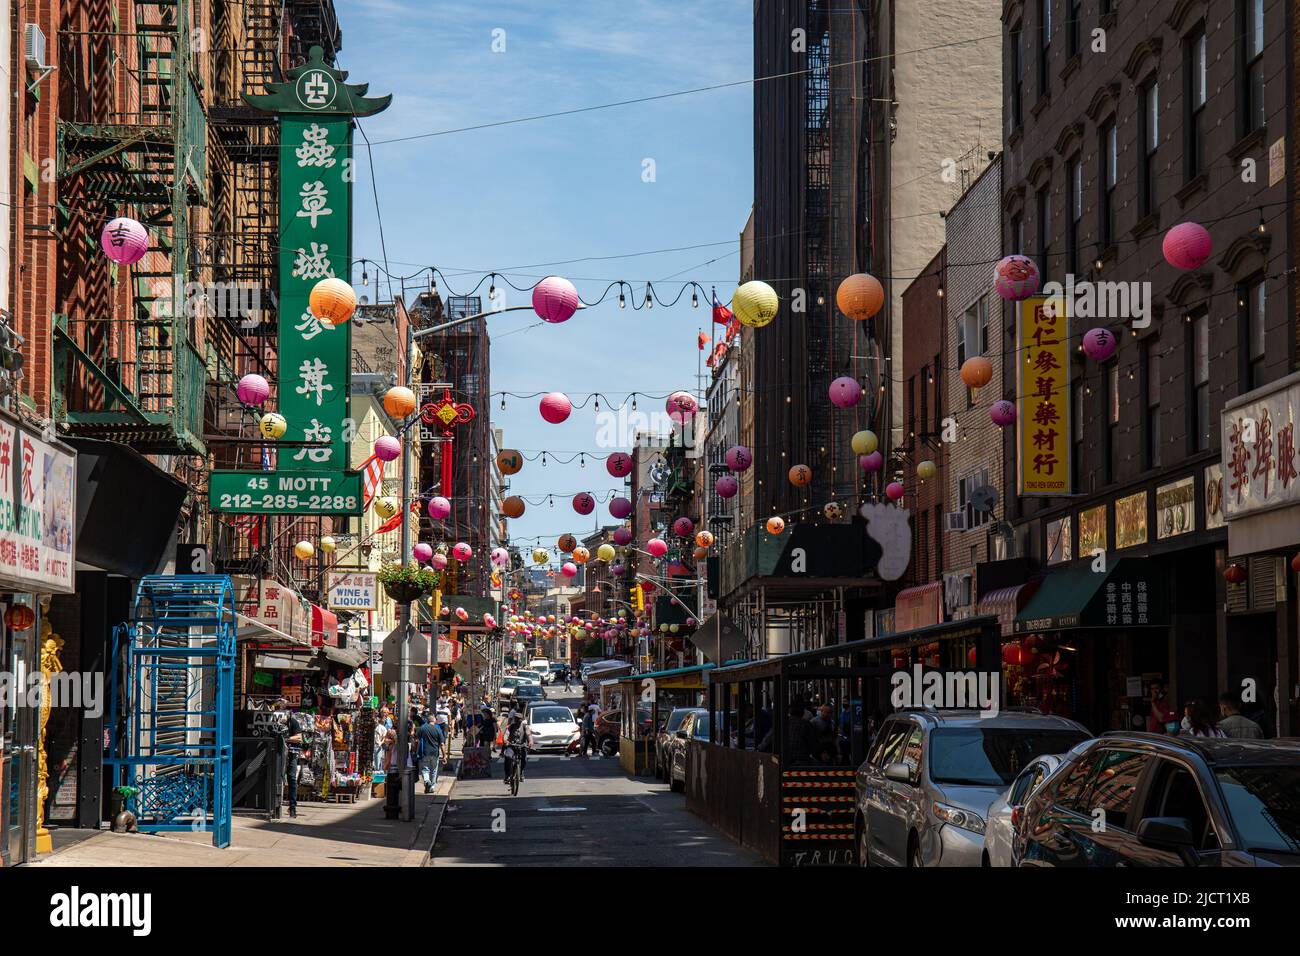 Mott Street street view in Chinatown, Manhattan, New York City, United States of America Stock Photo